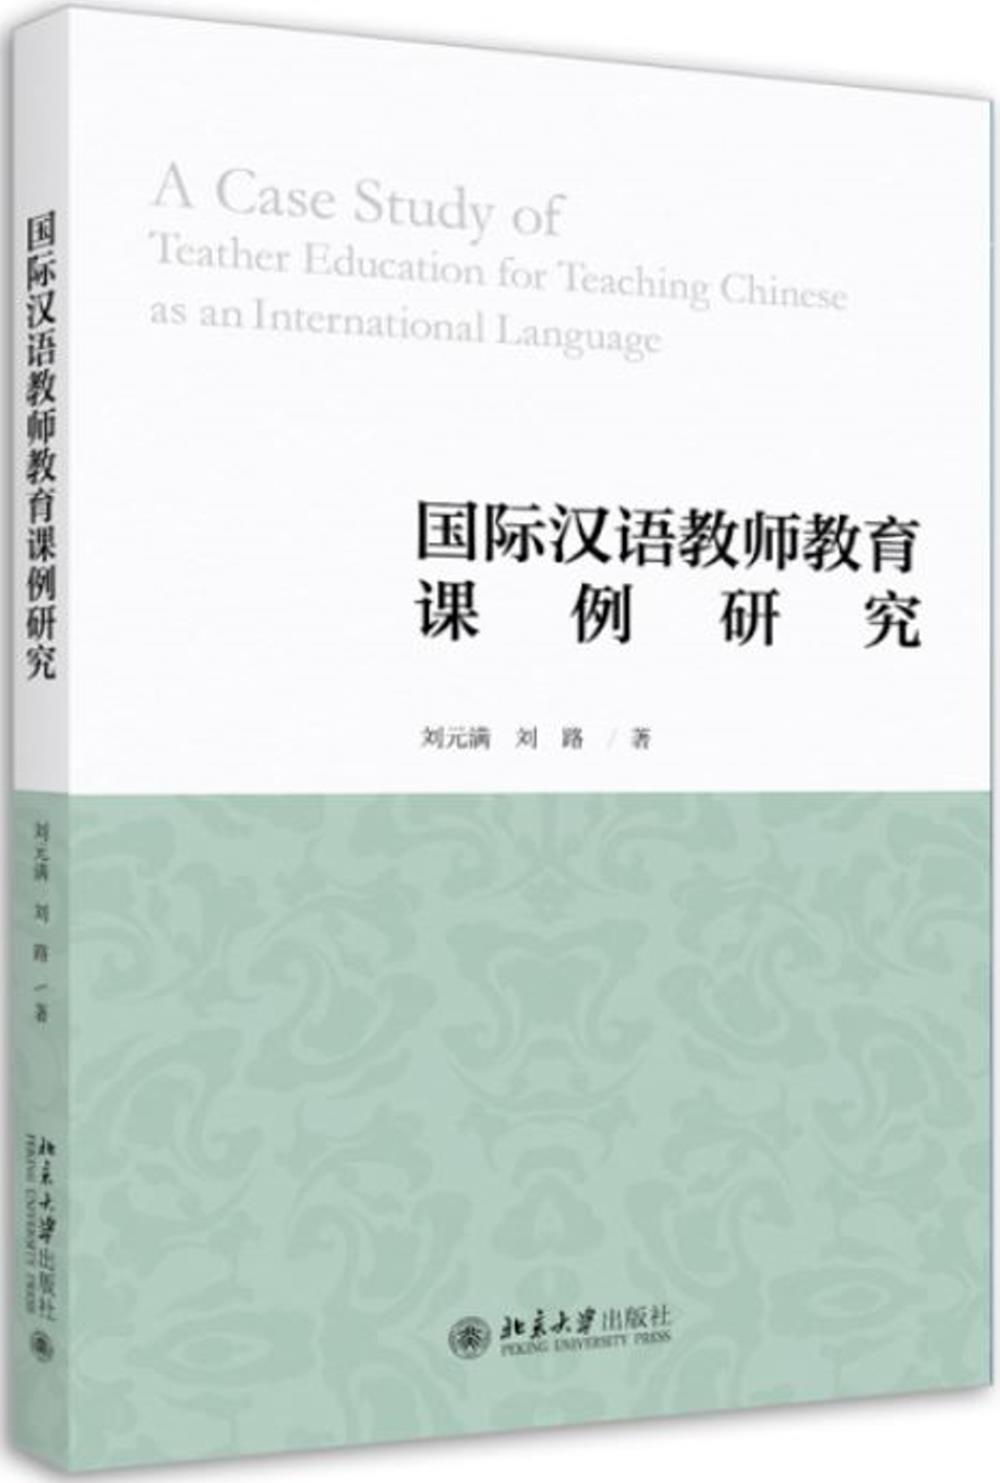 國際漢語教師教育課例研究